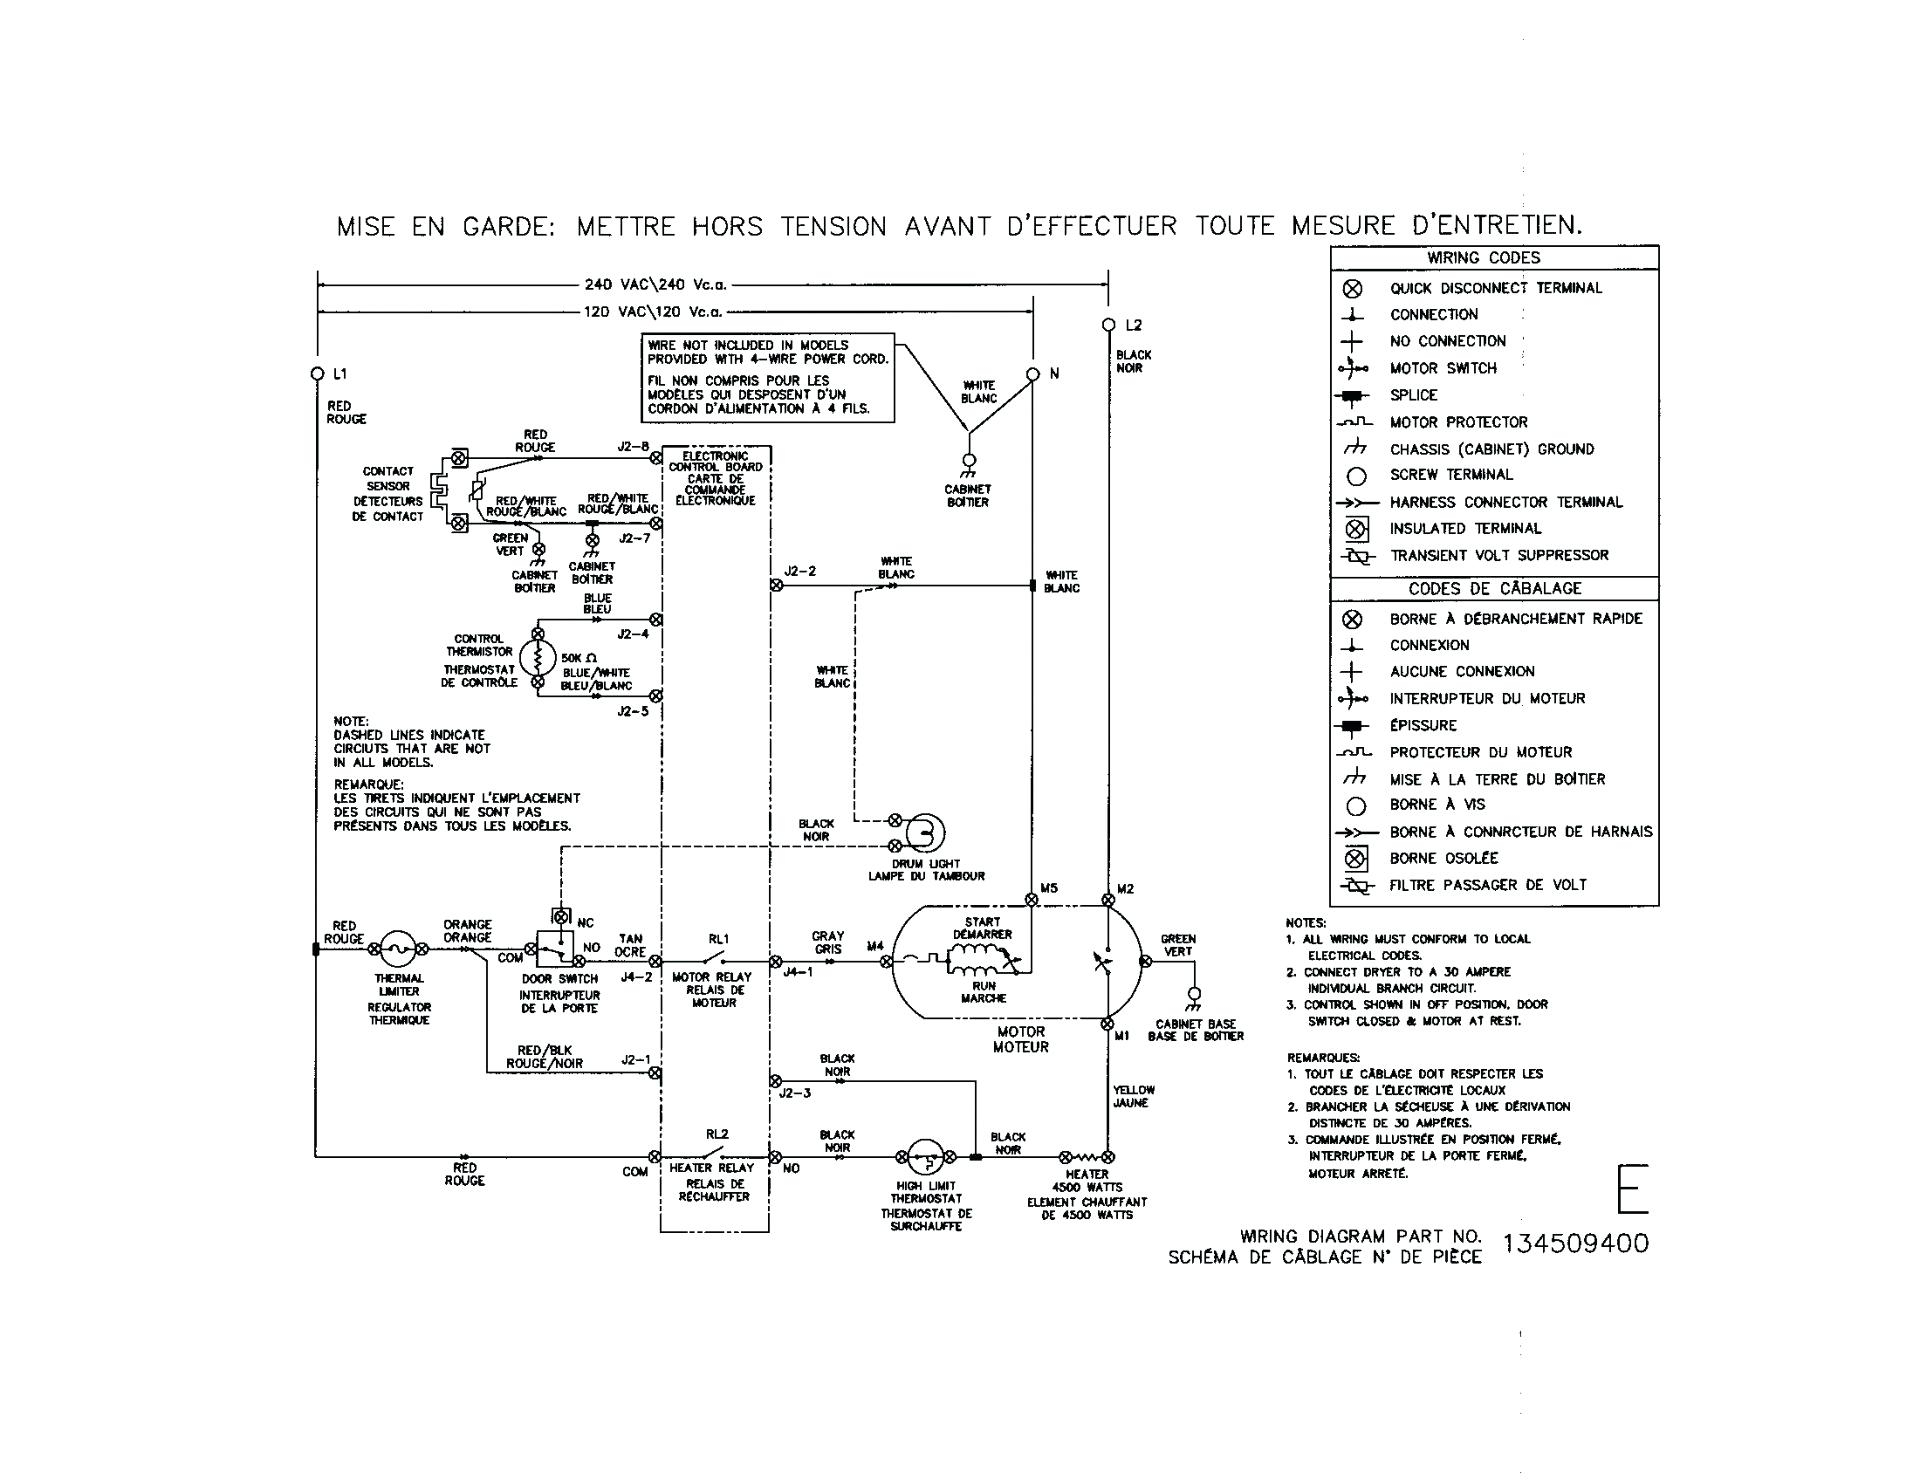 Troublshooting Swamp Cooler Wiring Diagrams | Manual E-Books - Swamp Cooler Switch Wiring Diagram